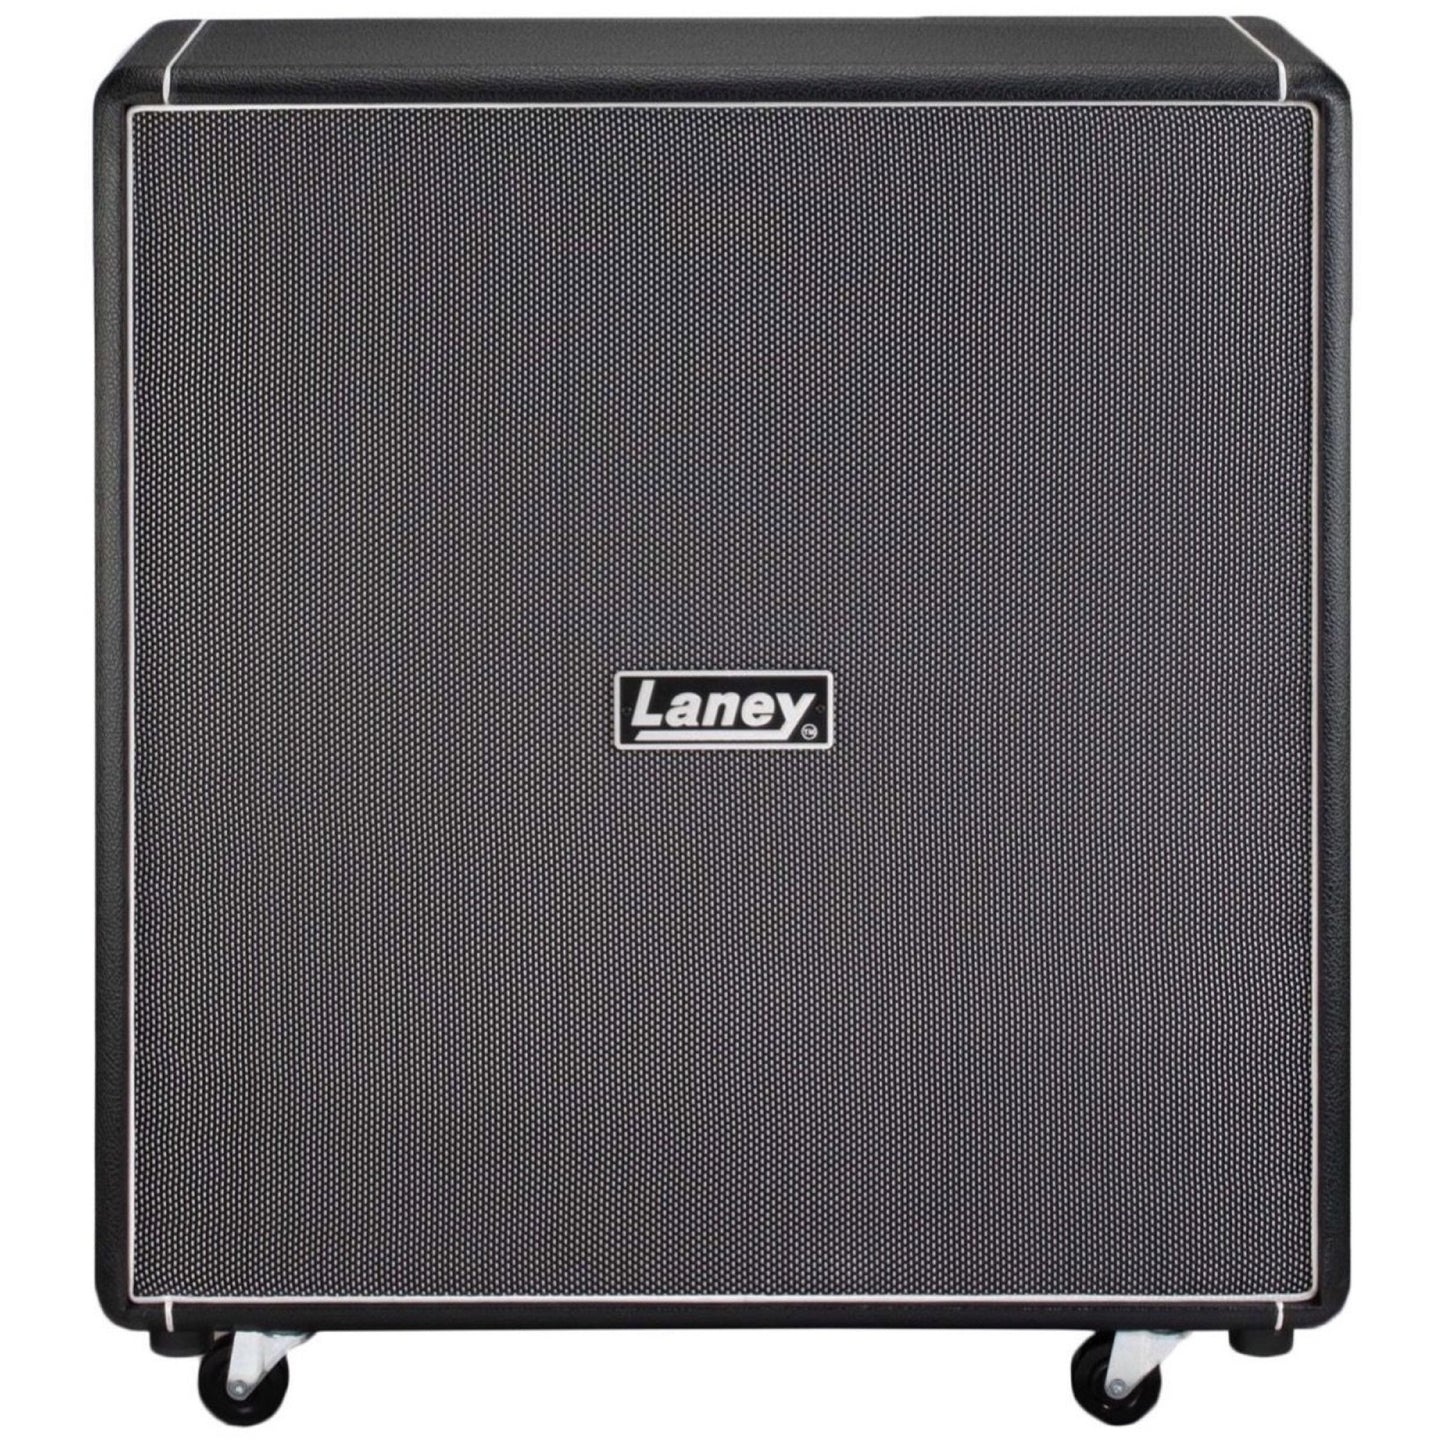 Laney LA212 Guitar Speaker Cabinet (50 Watts, 2x12 Inch), 8 Ohms